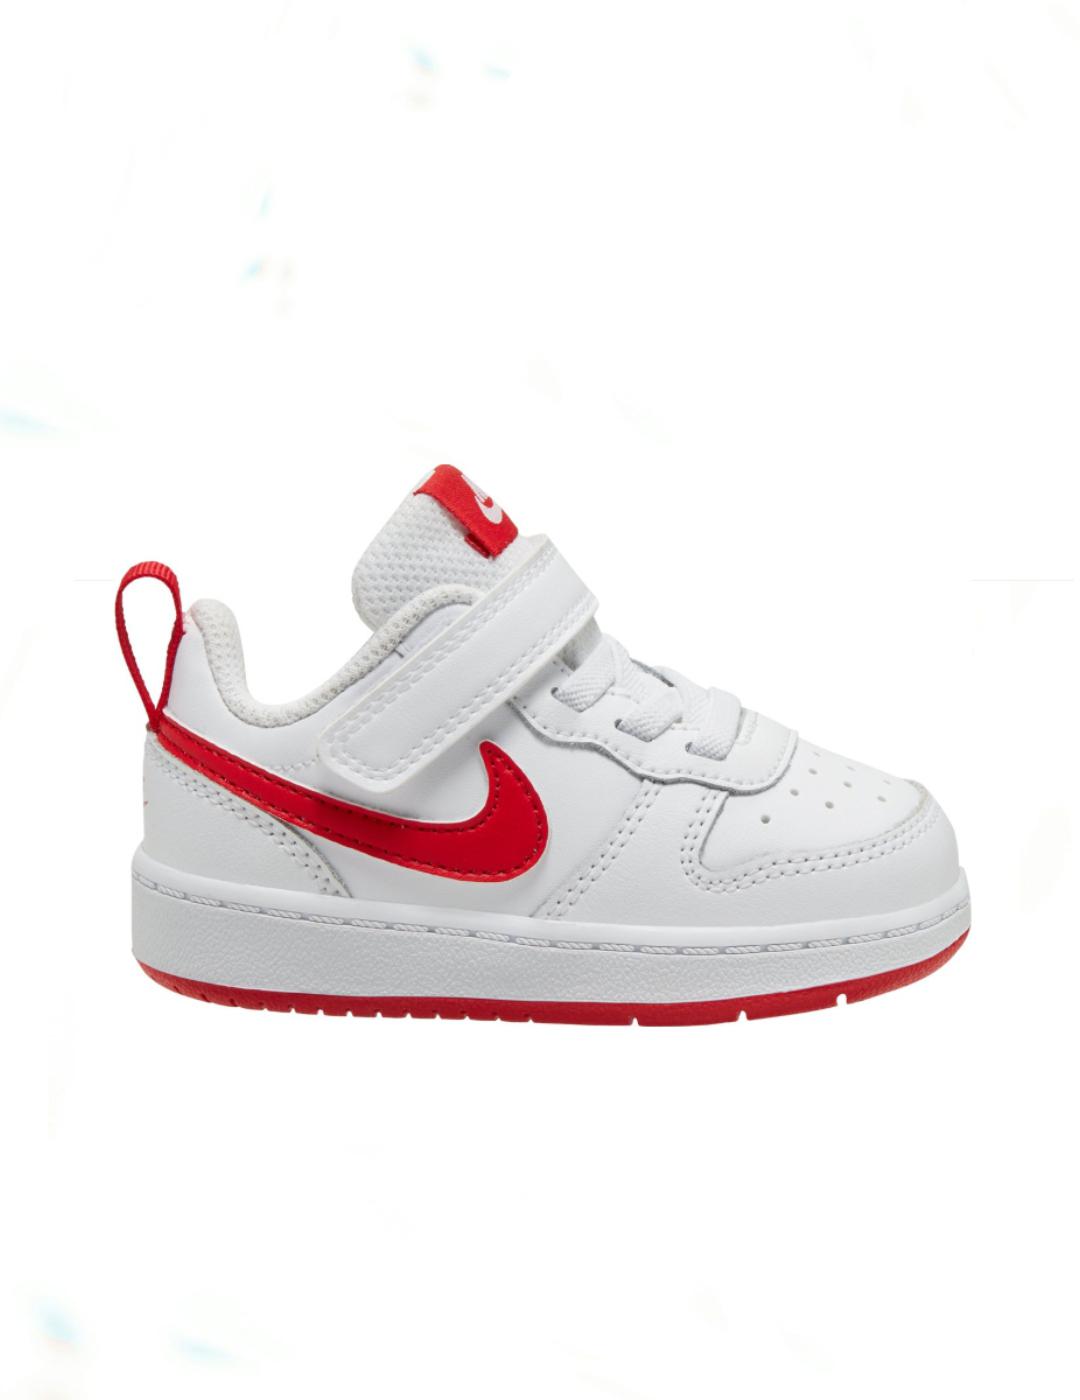 En cualquier momento sentido Controlar Zapatilla Nike court borough low 2 blanco rojo de niño